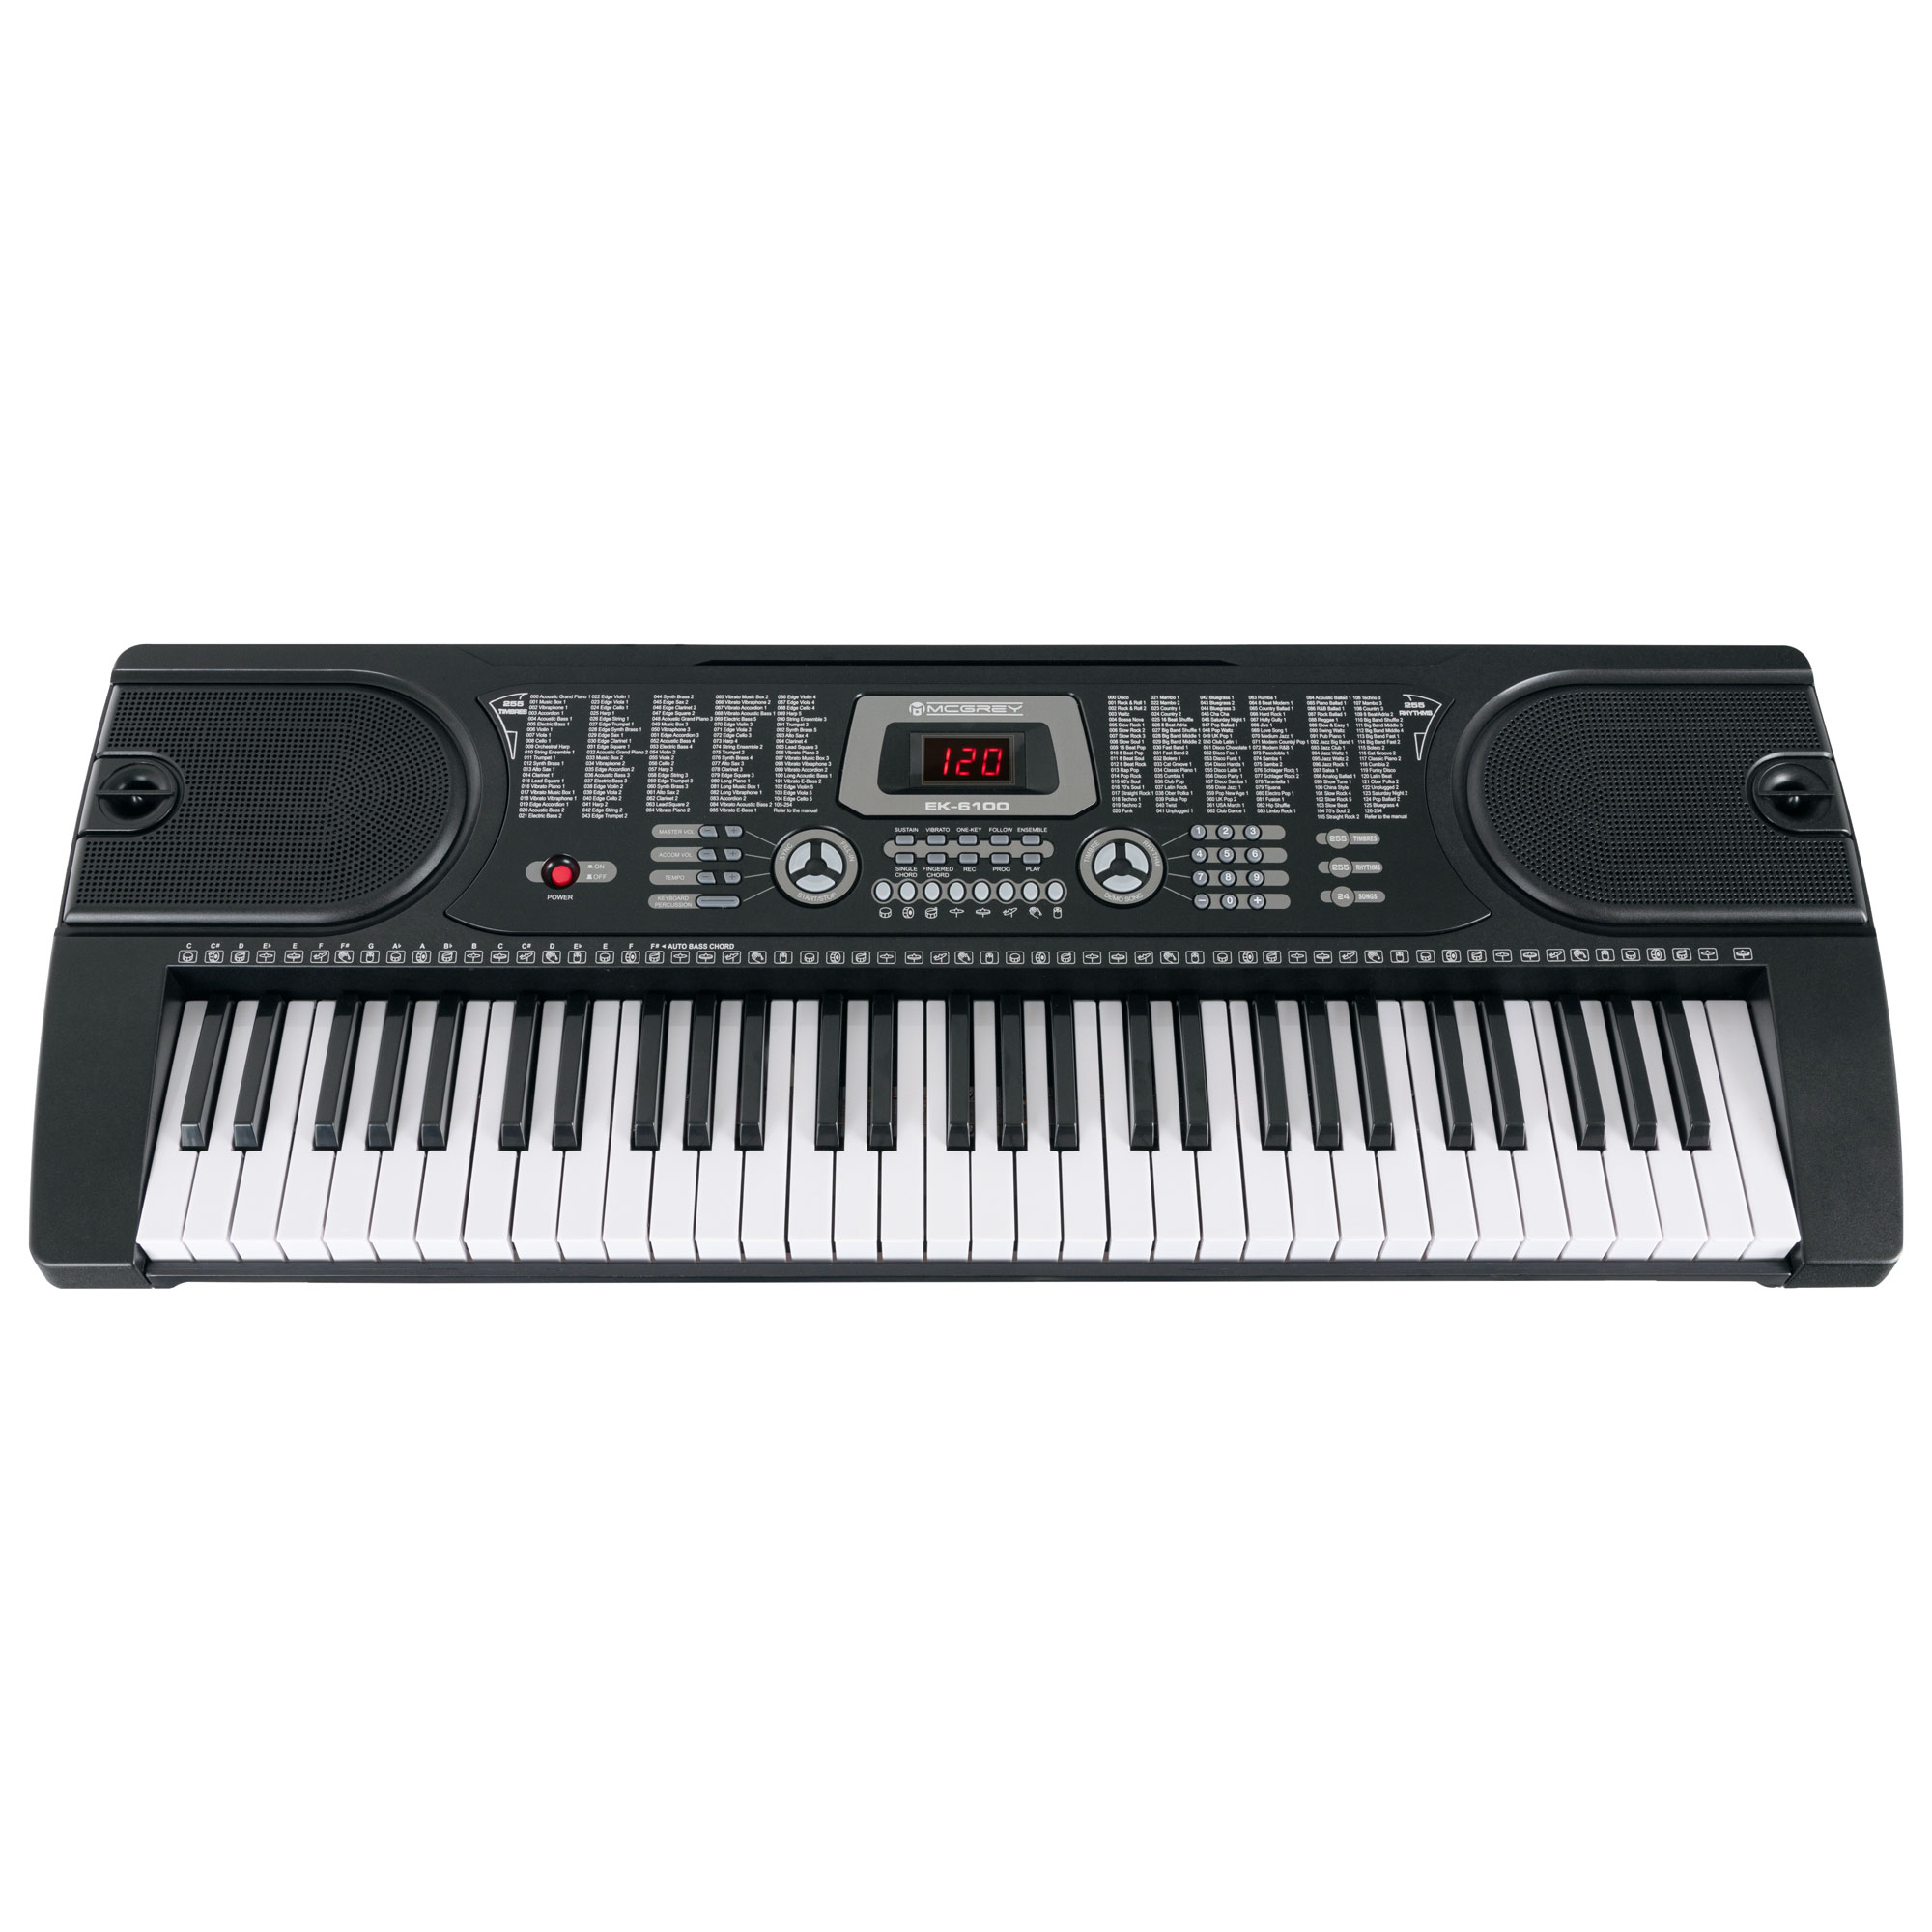 McGrey EK-6100 Keyboard | Obrázok 1 | eplay.sk